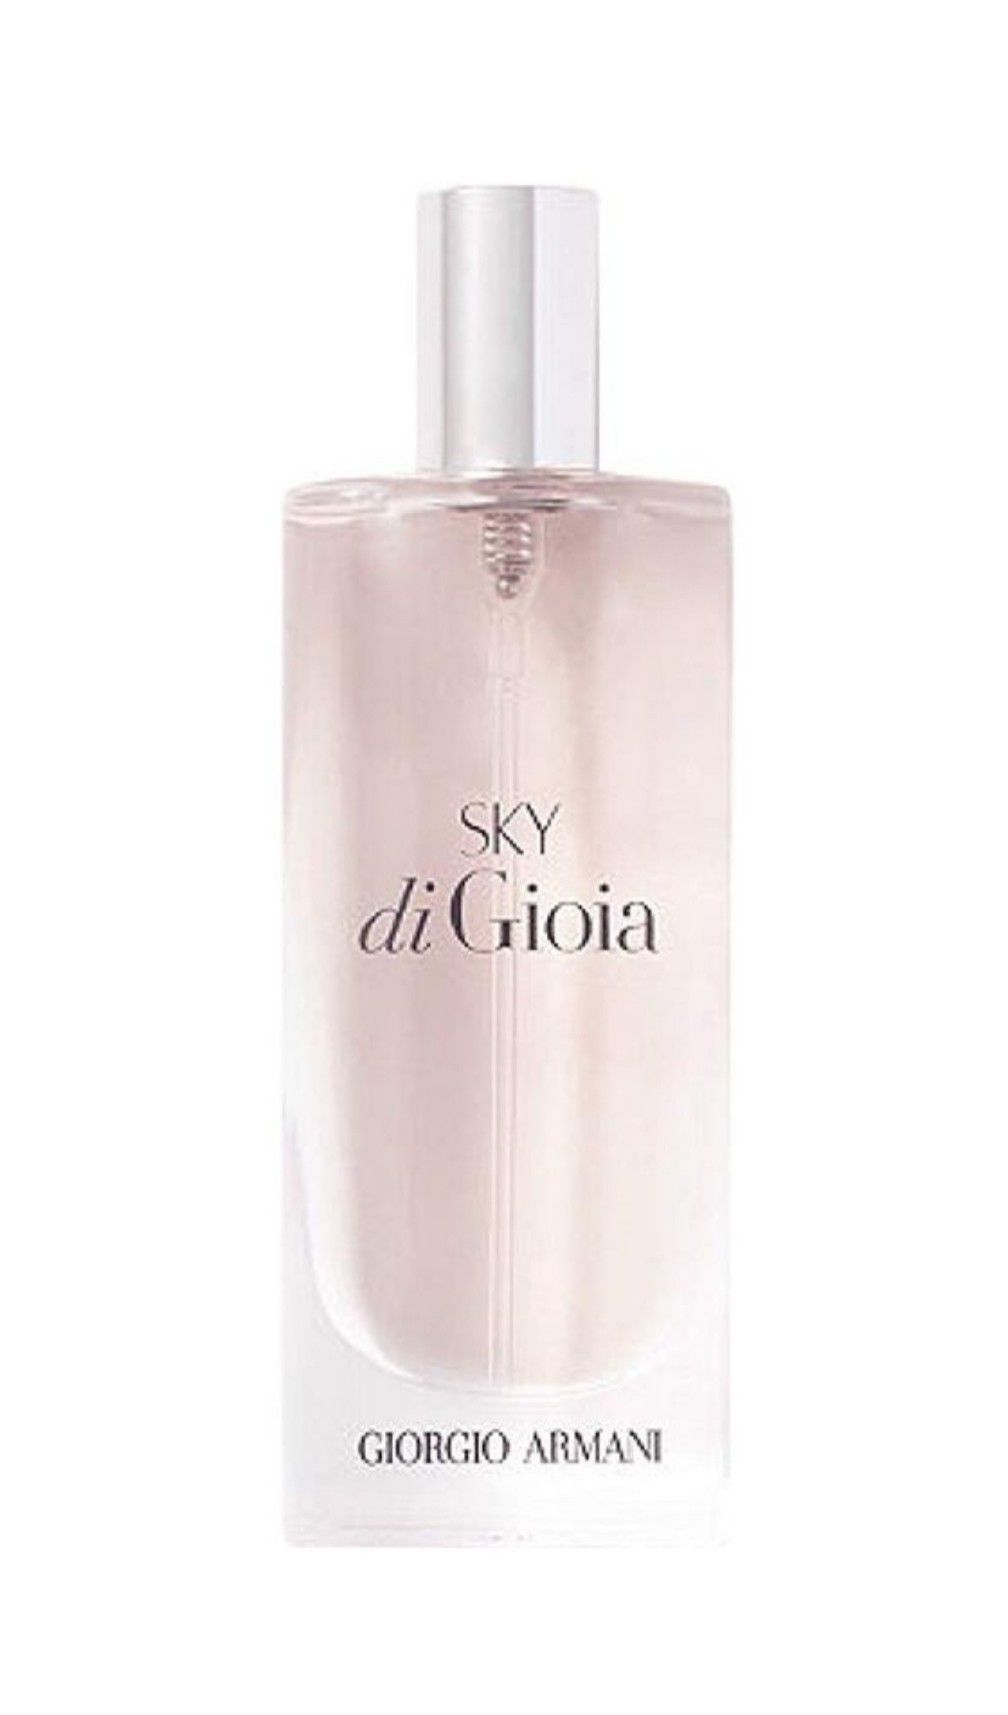 NEW Giorgio Armani Sky Perfume Travel Spray